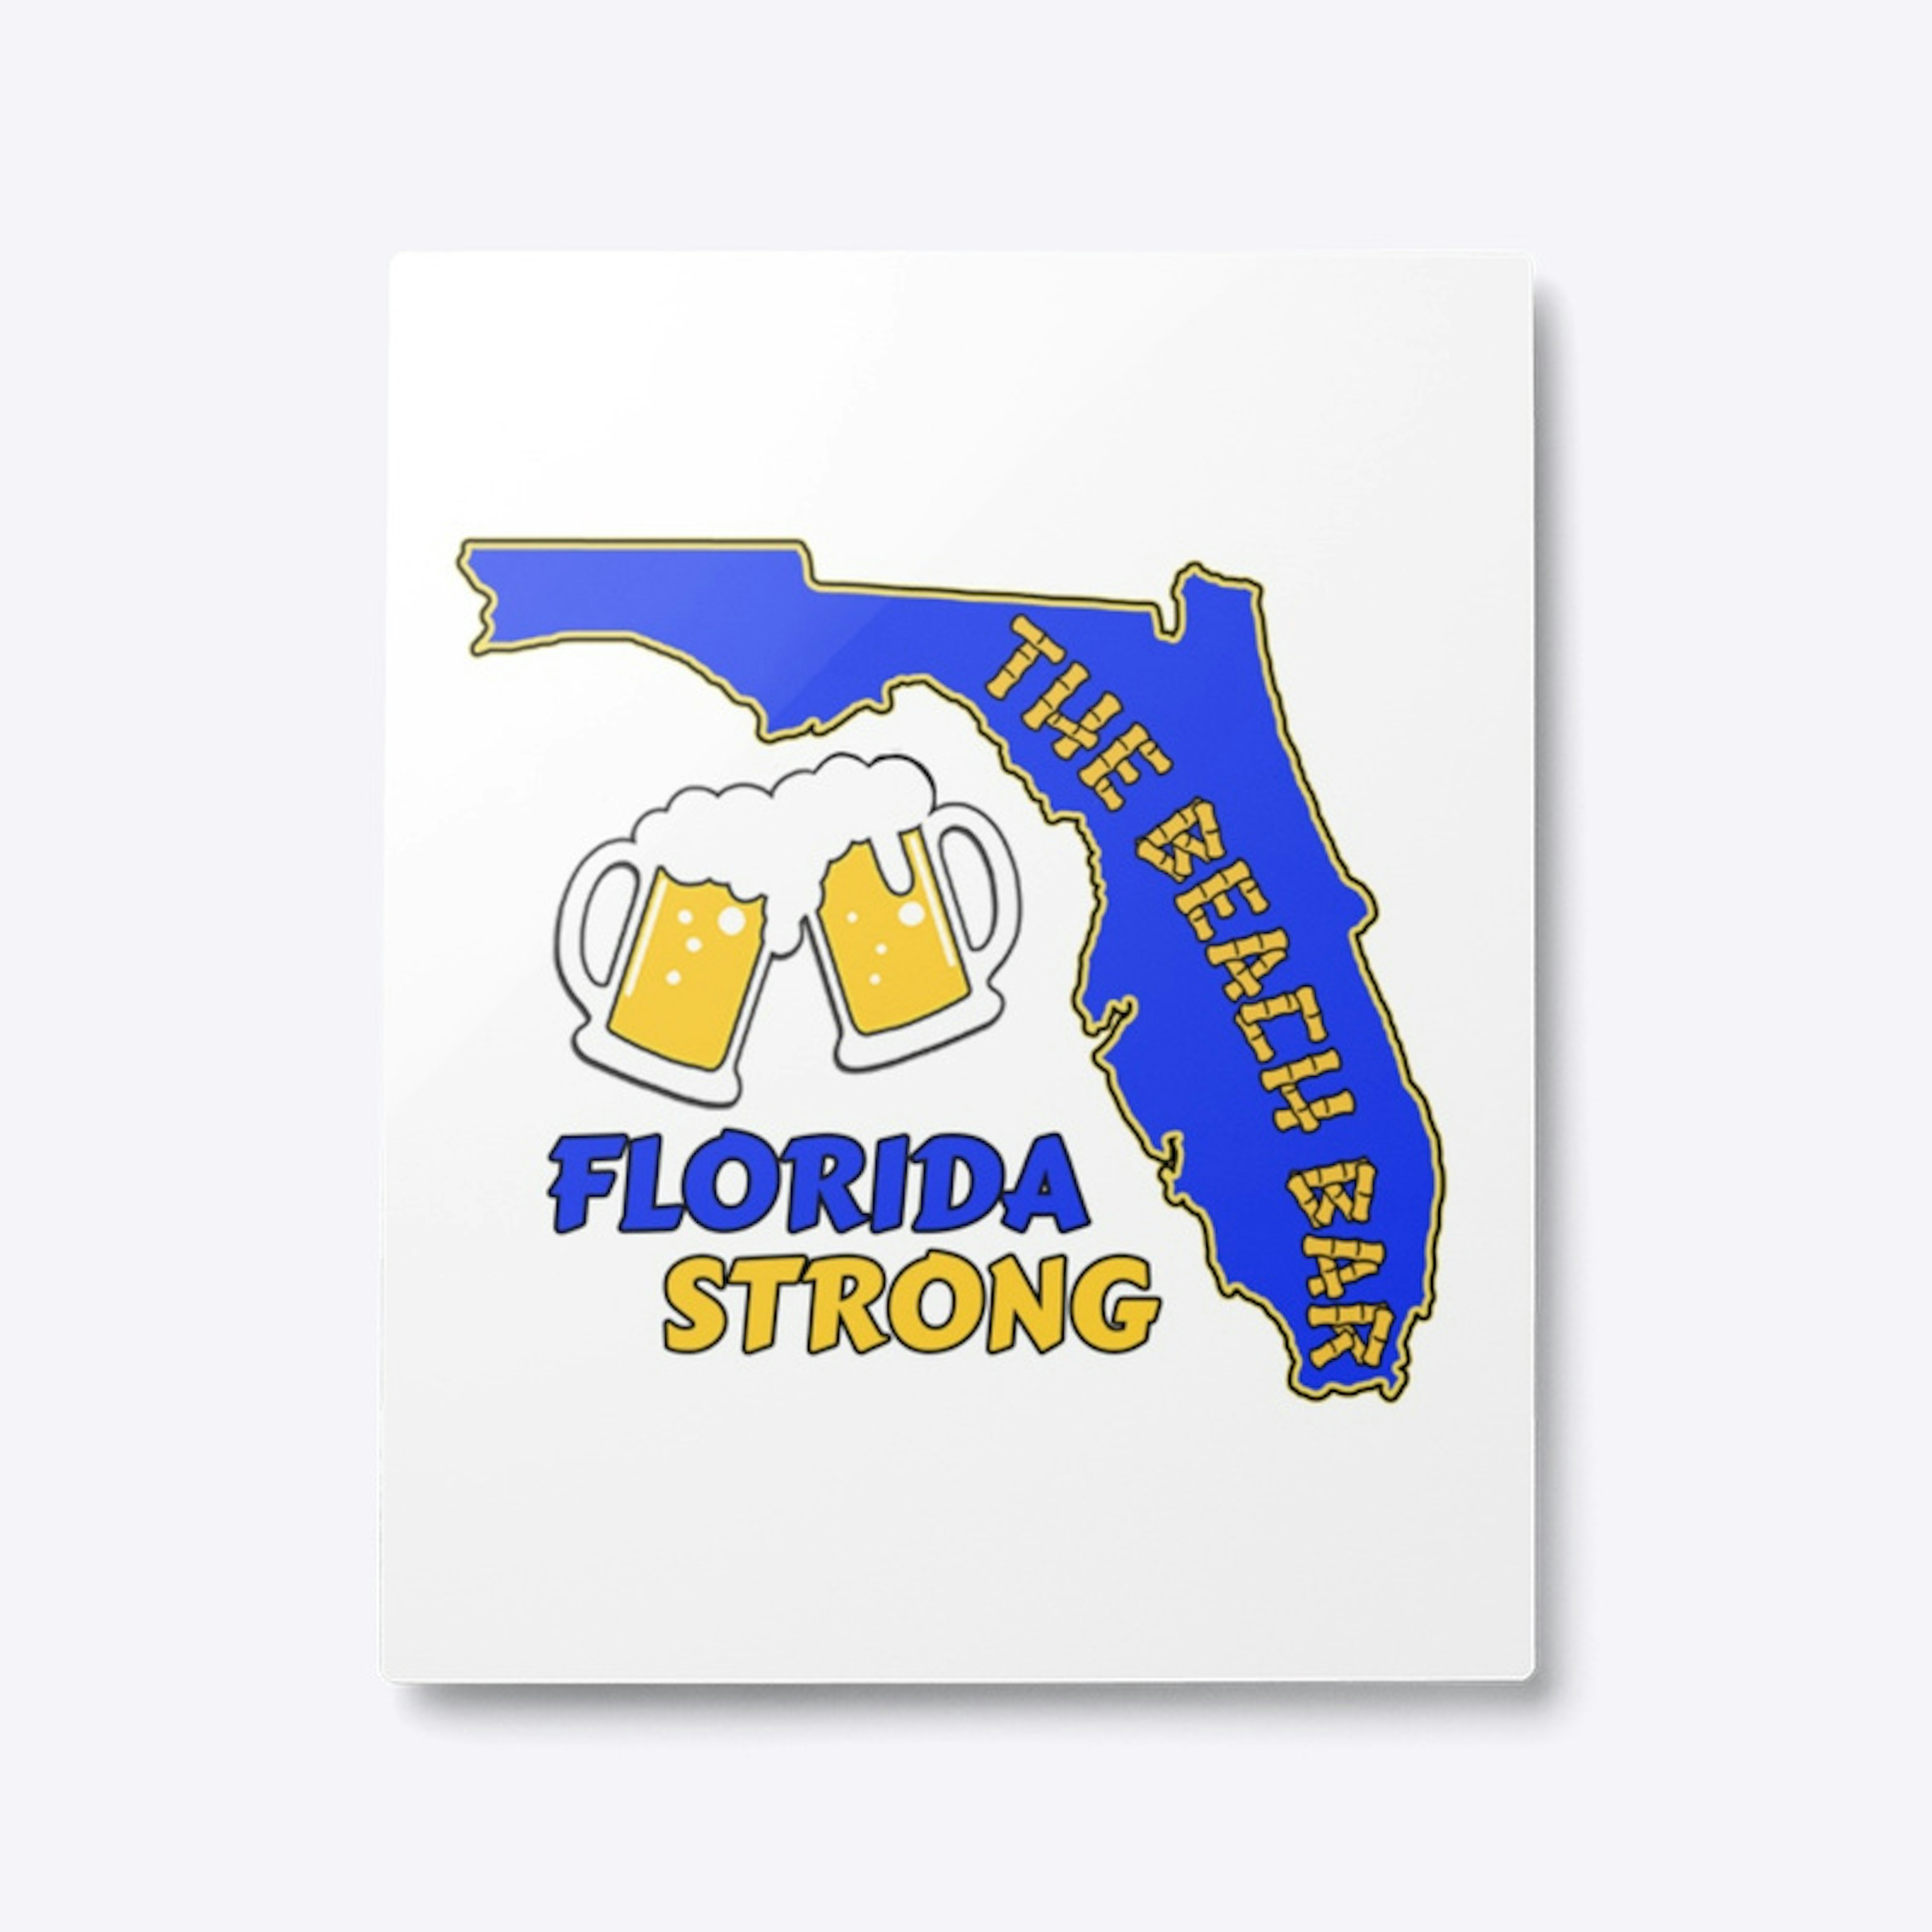 The Beach Bar Florida Strong Collection